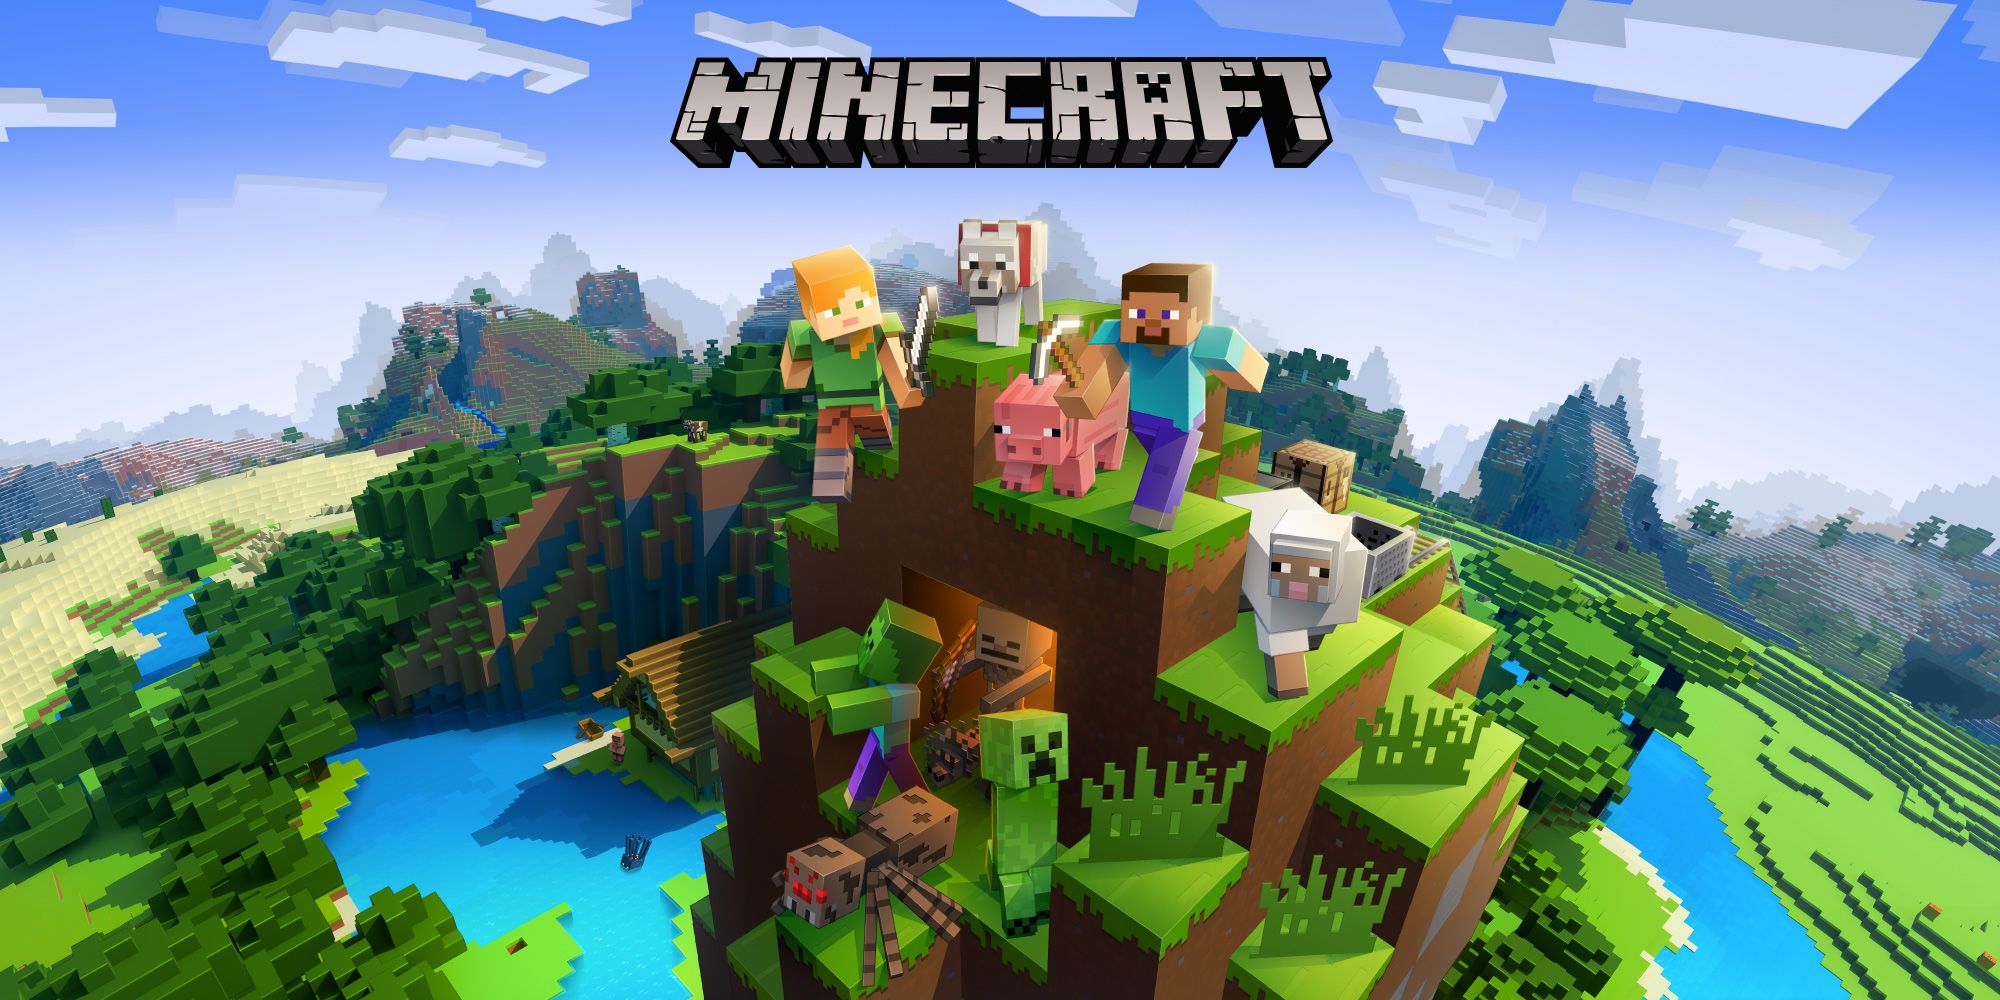 Uma imagem mostrando personagens do Minecraft